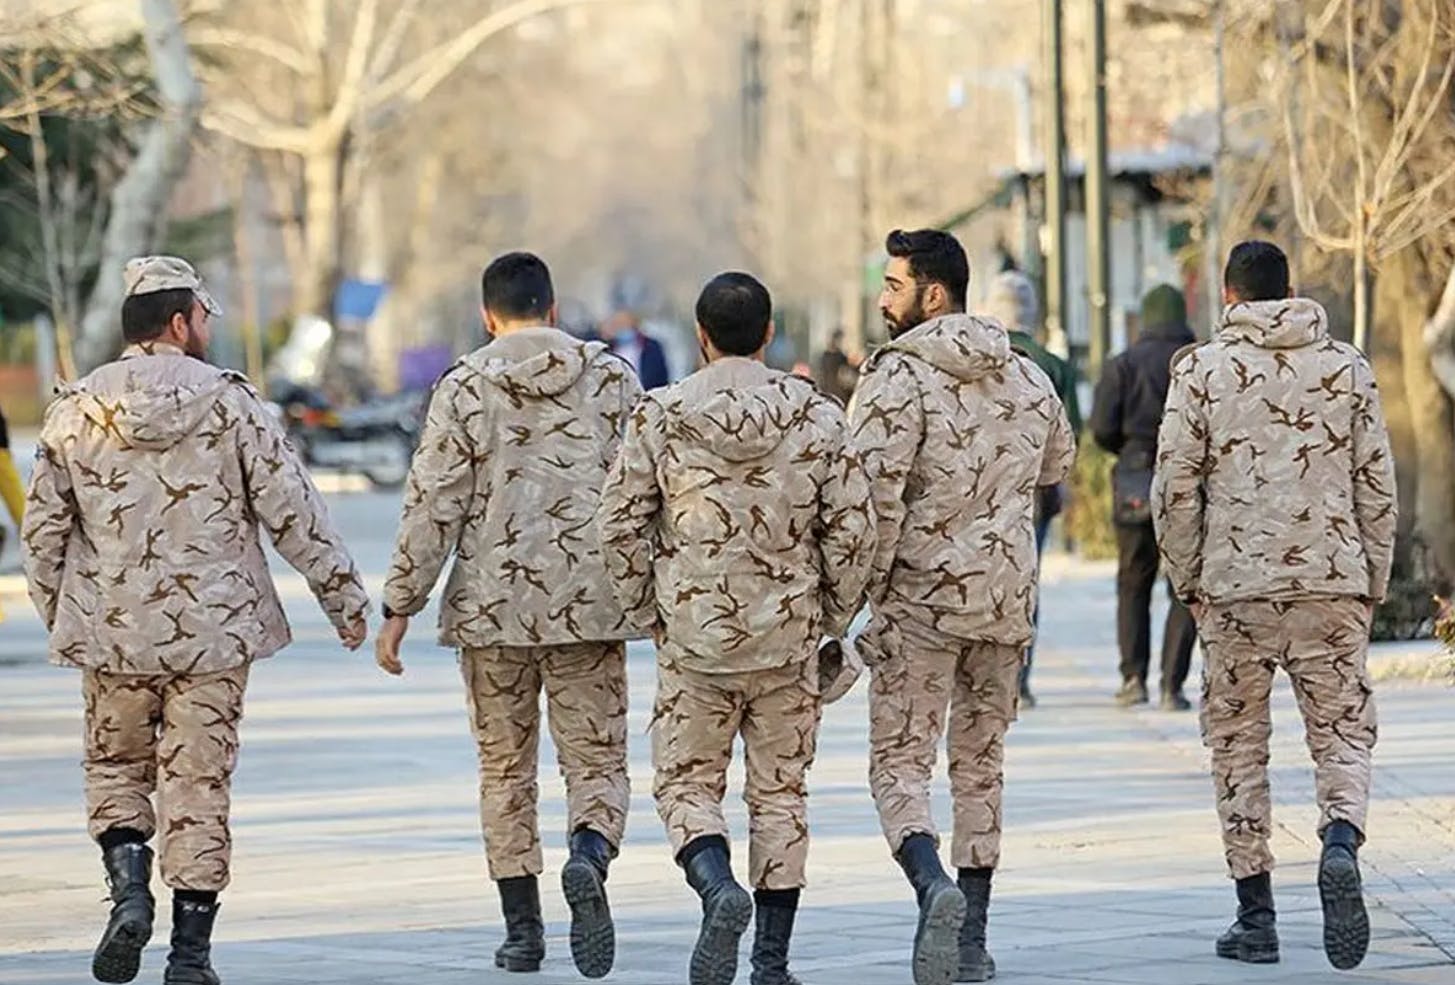 پنج سرباز در حال راه رفتن در ایی شبیه پارک